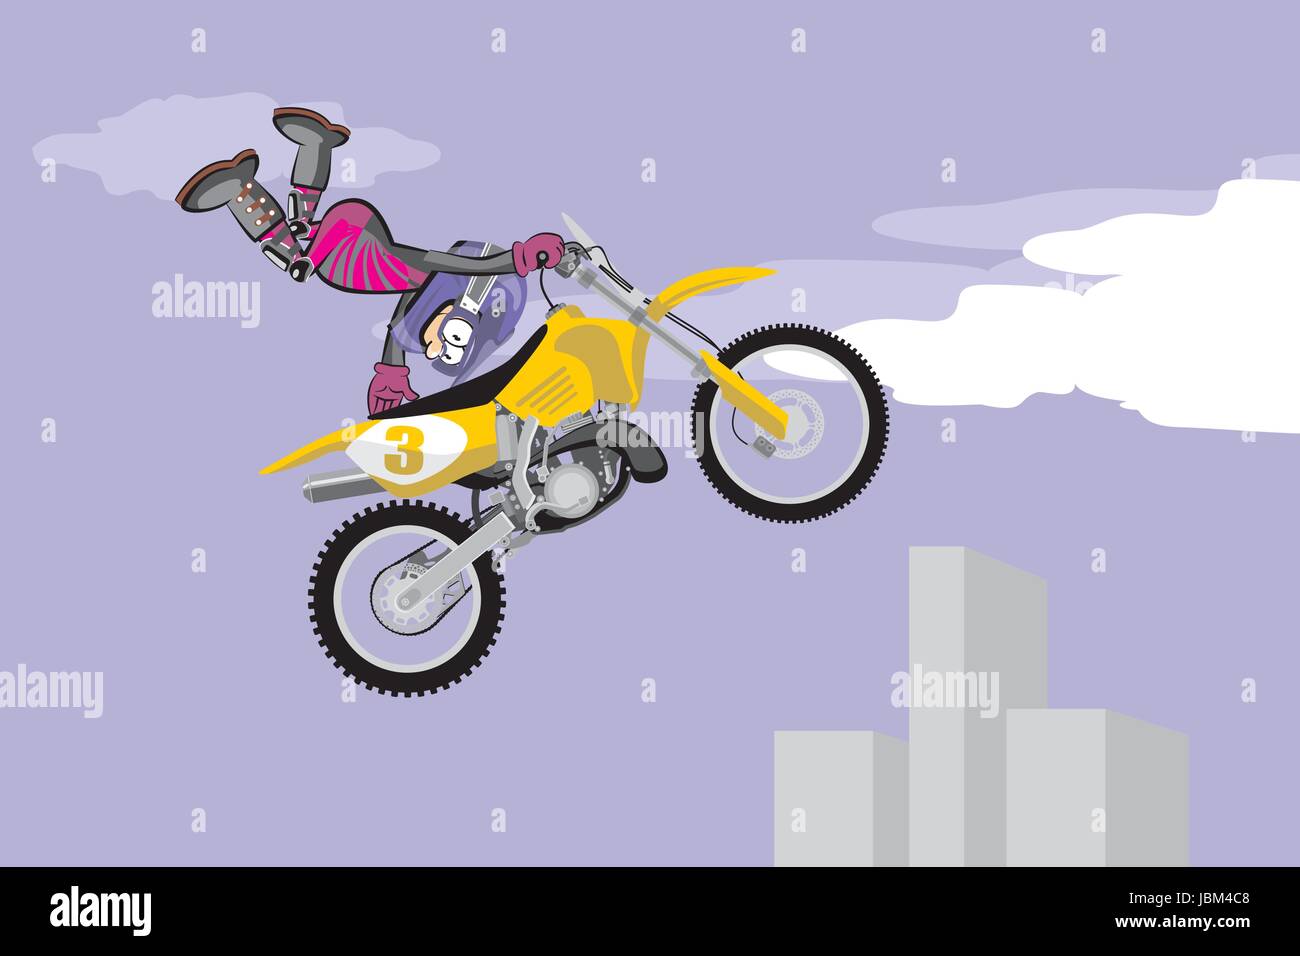 Motocross piloto realizando um salto em altura. Estilo dos desenhos  animados imagem vetorial de PhotoEstelar© 152784060